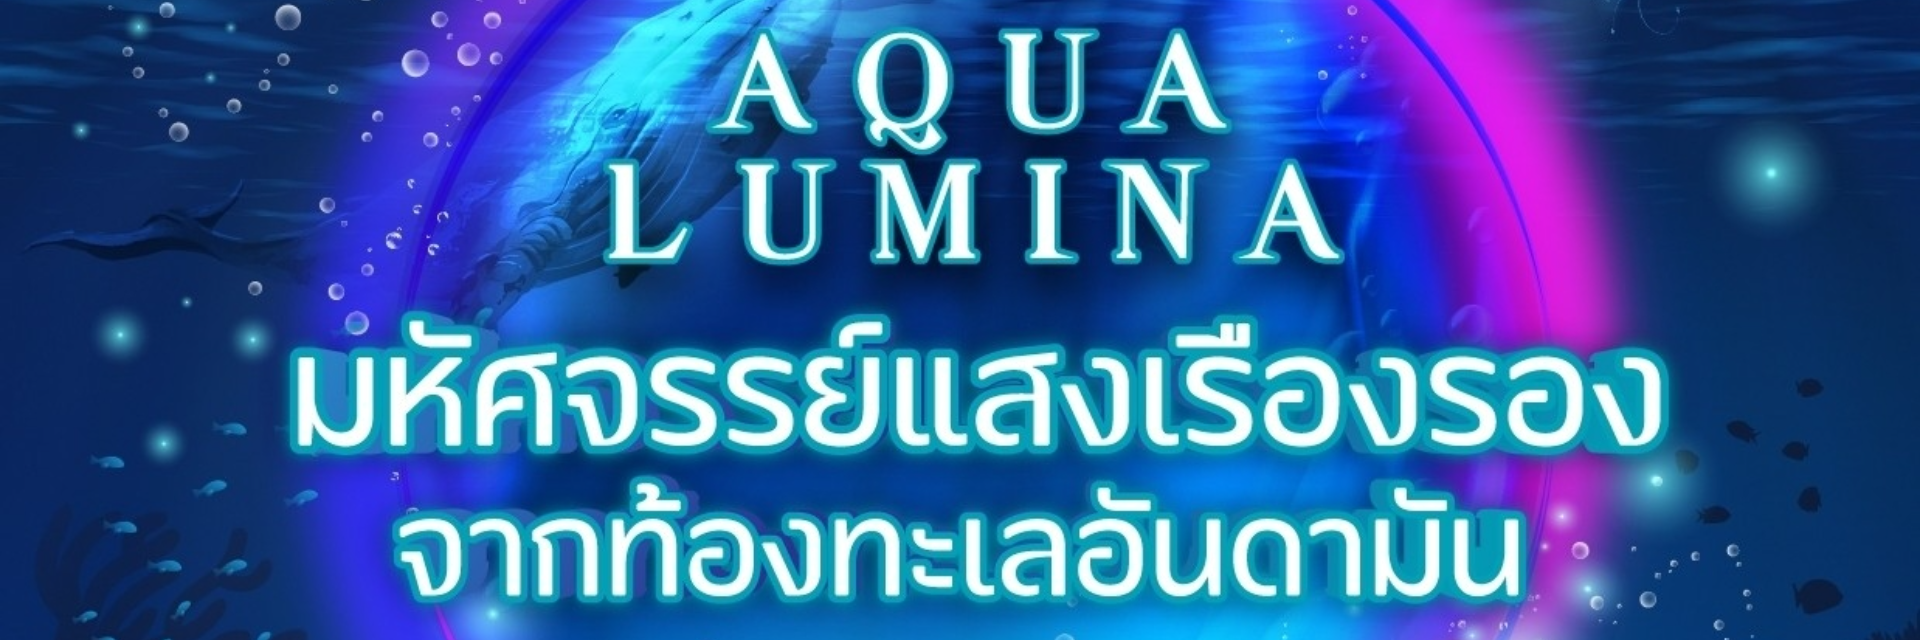 เทศกาลประดับไฟ 3 จังหวัดภาคใต้ Aqua Lumina มหัศจรรย์แสงเรืองรองจากท้องทะเลอันดามัน